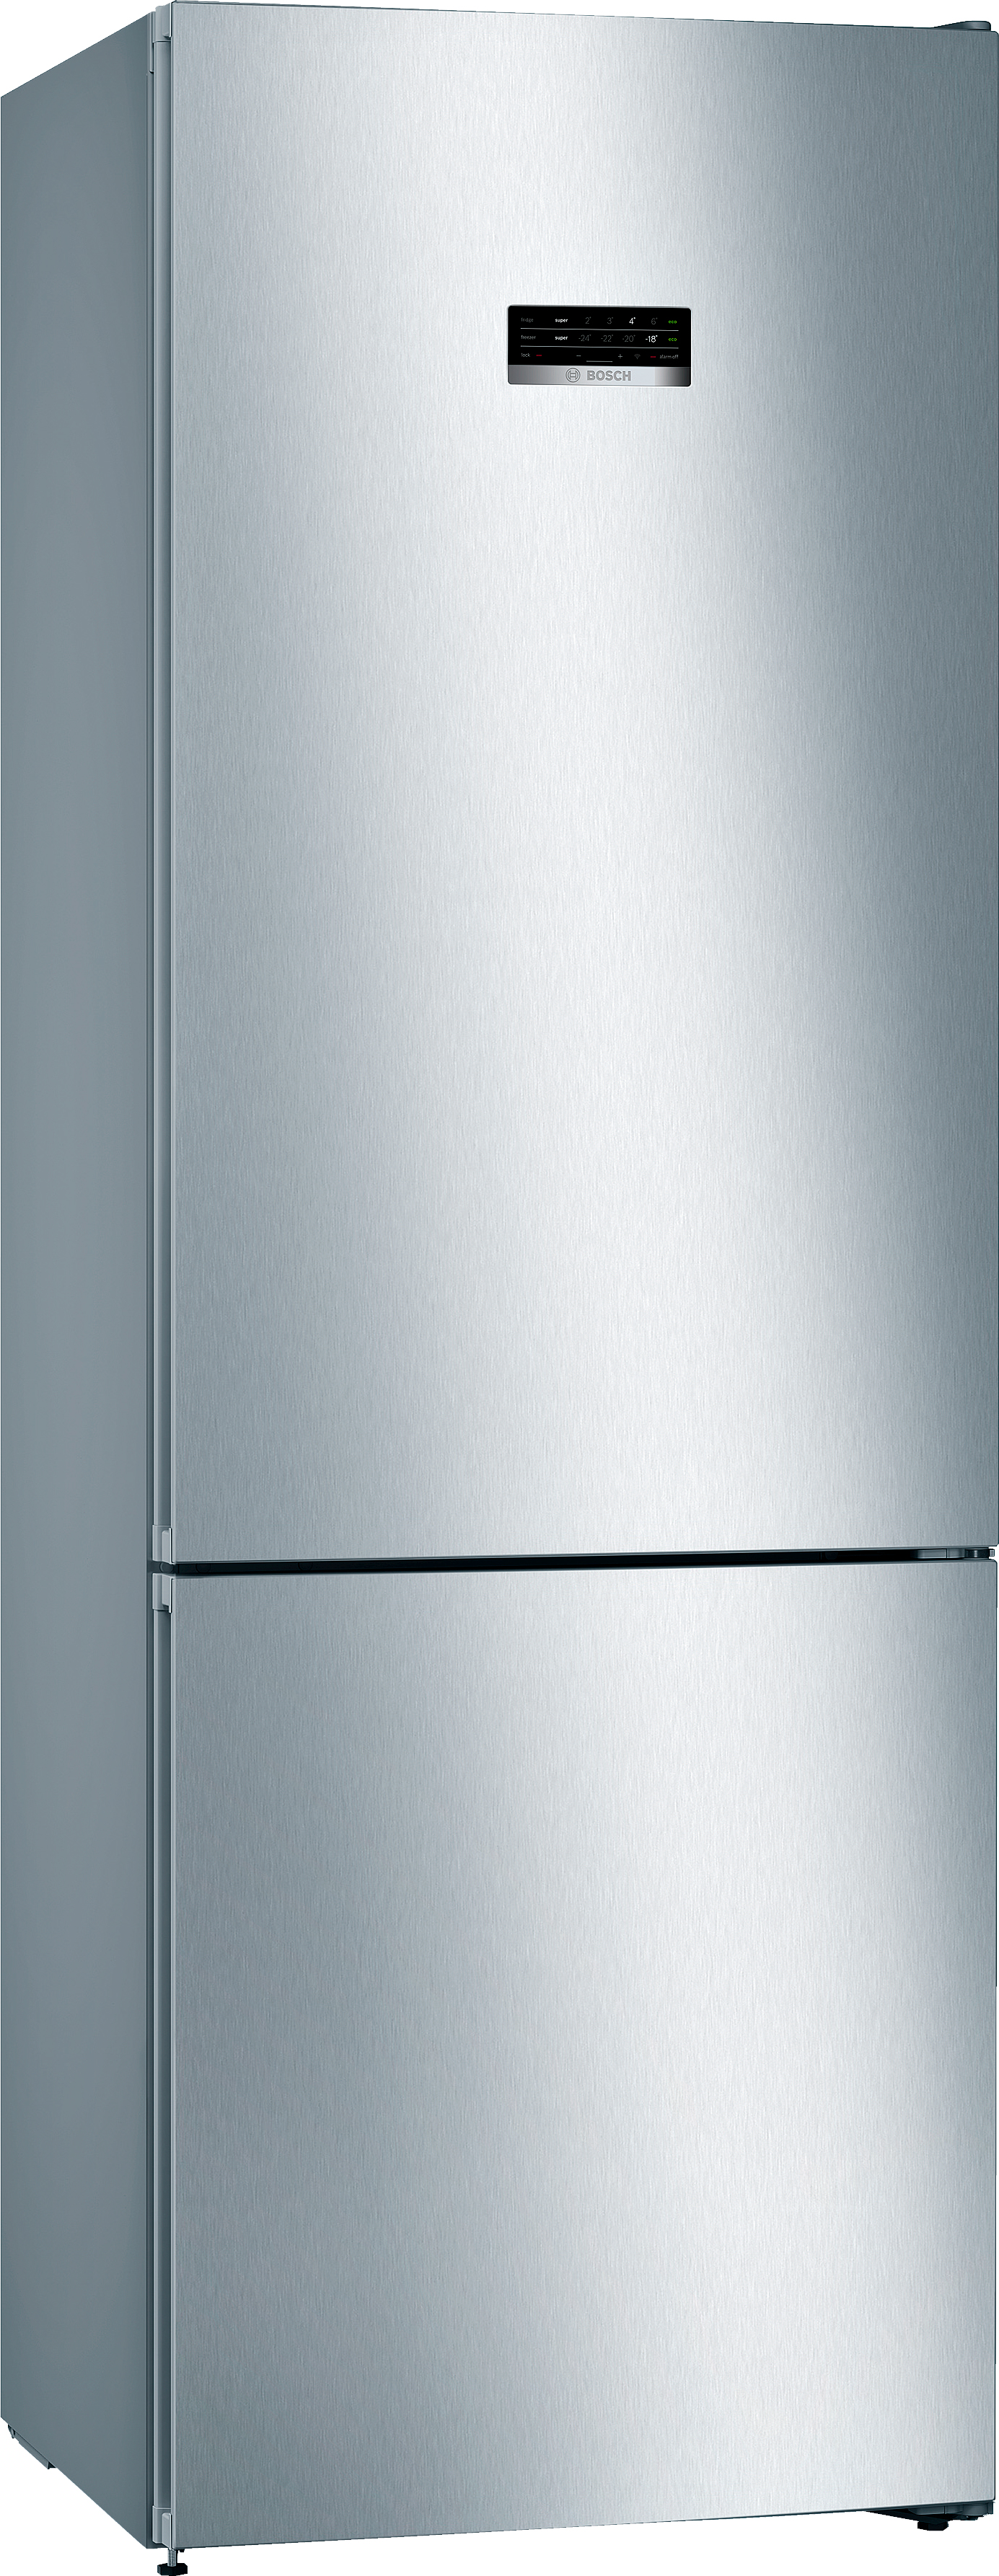 Цена холодильник Bosch KGN49XL306 в Киеве